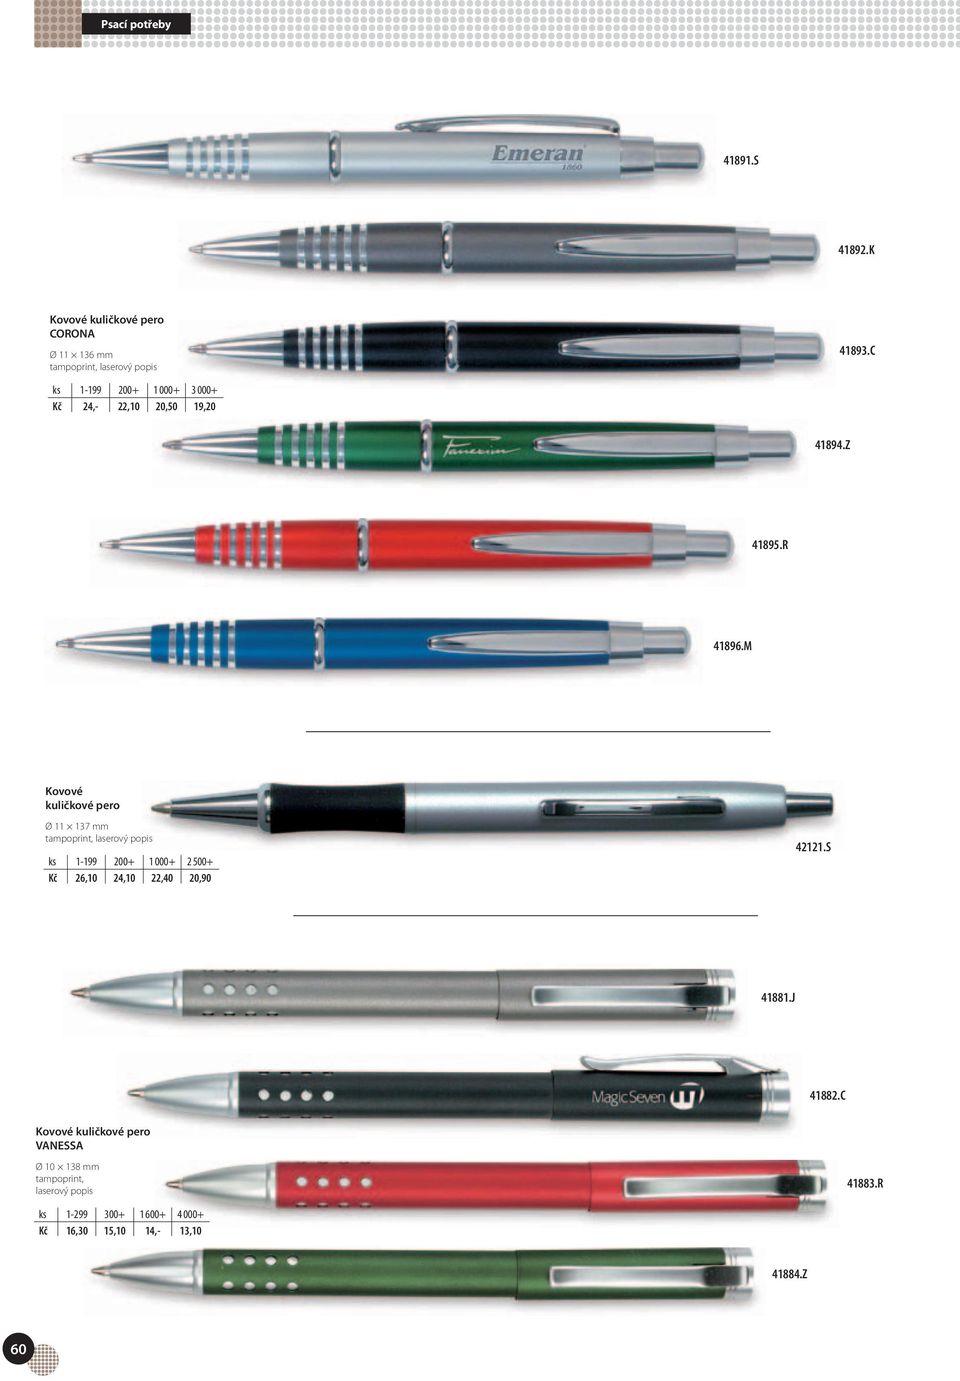 M Kovové kuličkové pero Ø 11 137 mm ks 1-199 200+ 1 000+ 2 500+ Kč 26,10 24,10 22,40 20,90 42121.